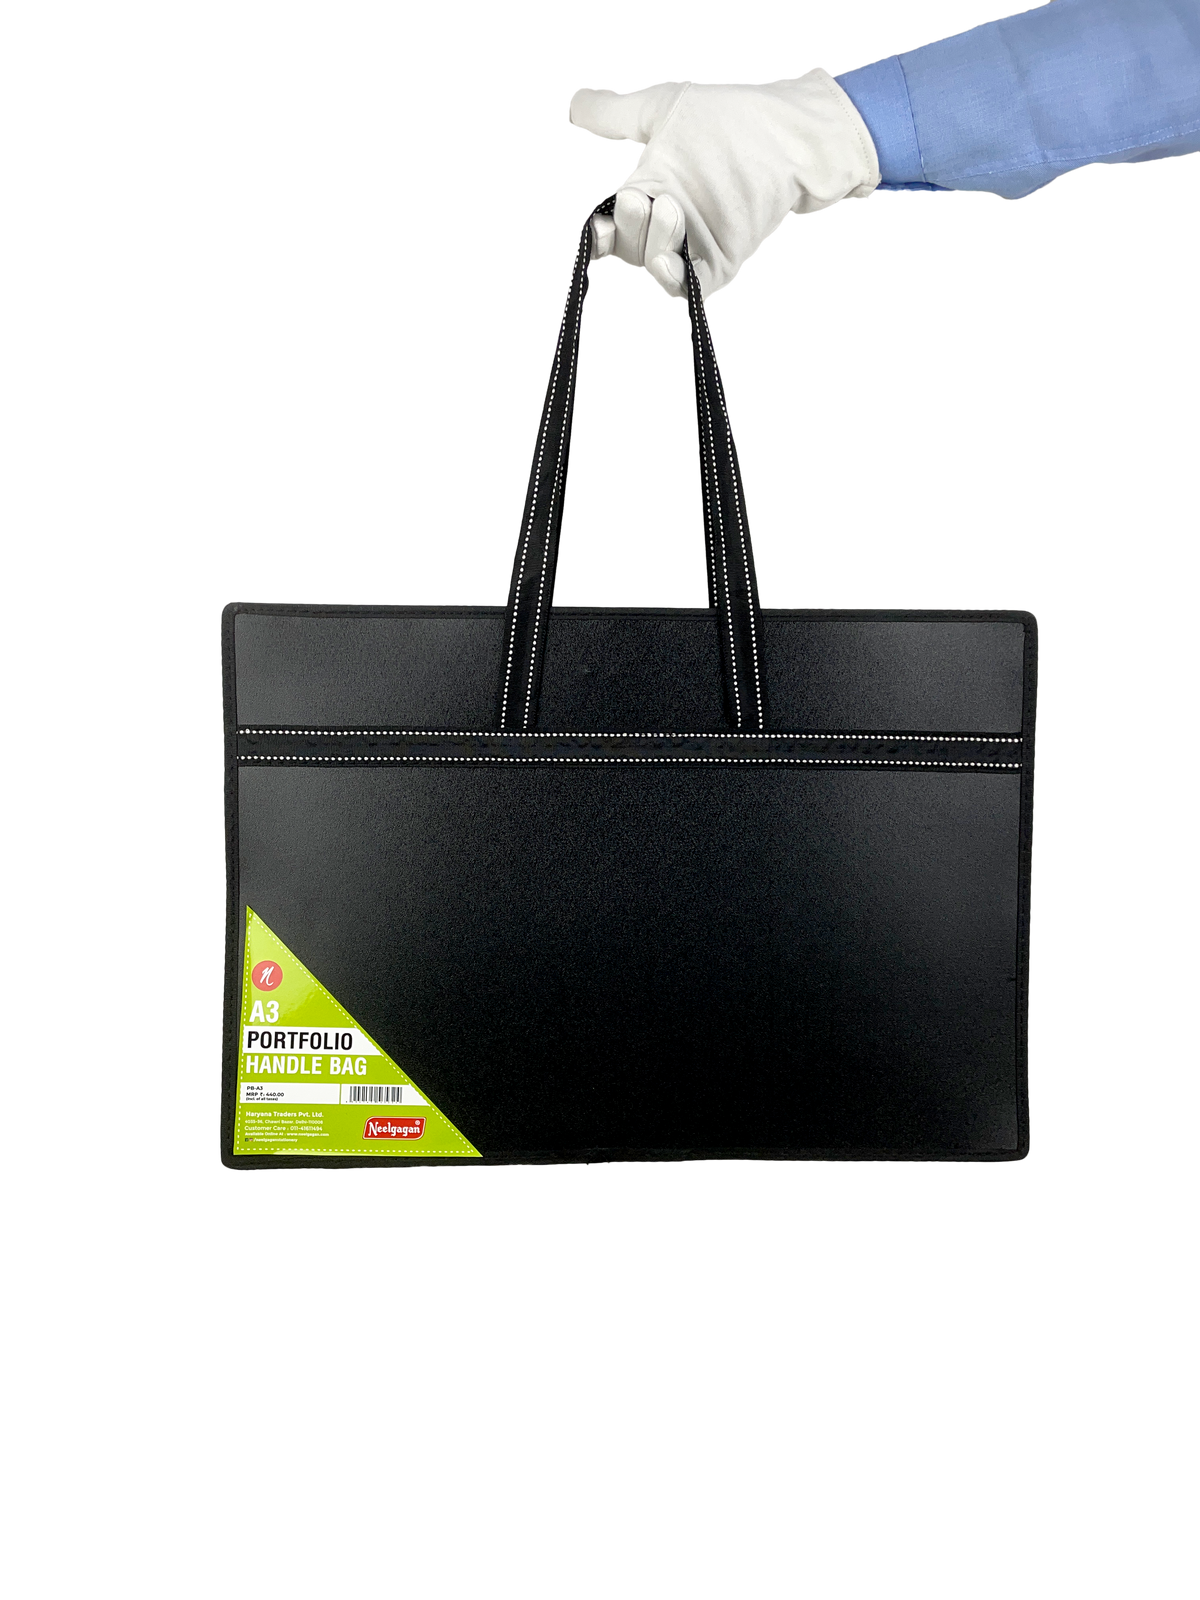 Portfolio Handle Bag A2 / A3 Size Black Color